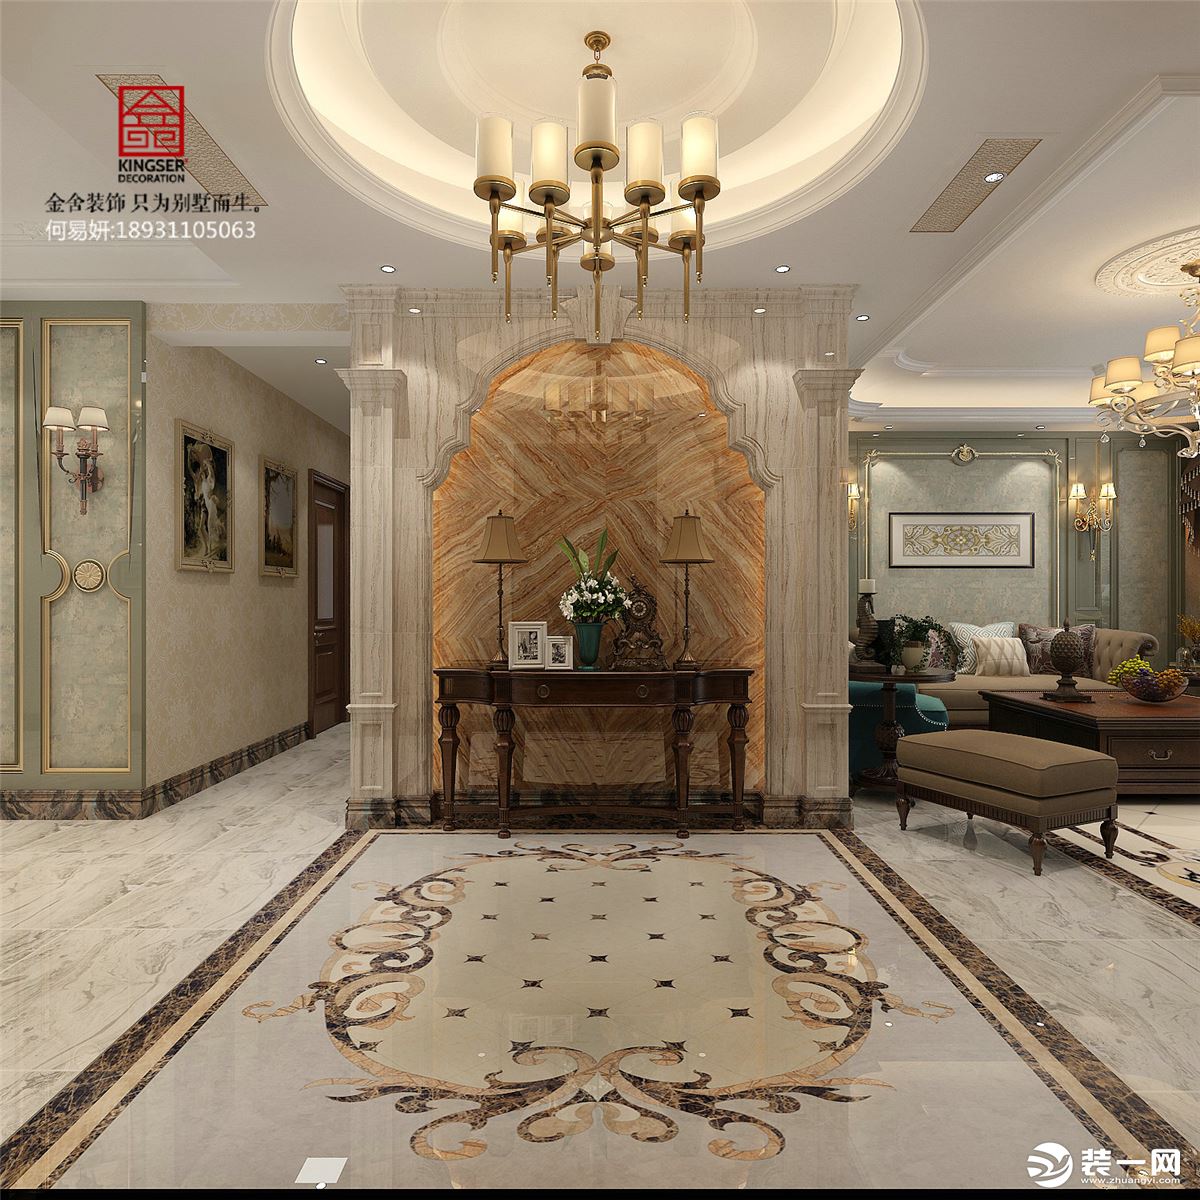 上海建德公馆奢华欧式风格餐厅装修效果图2014图片_太平洋家居网图库